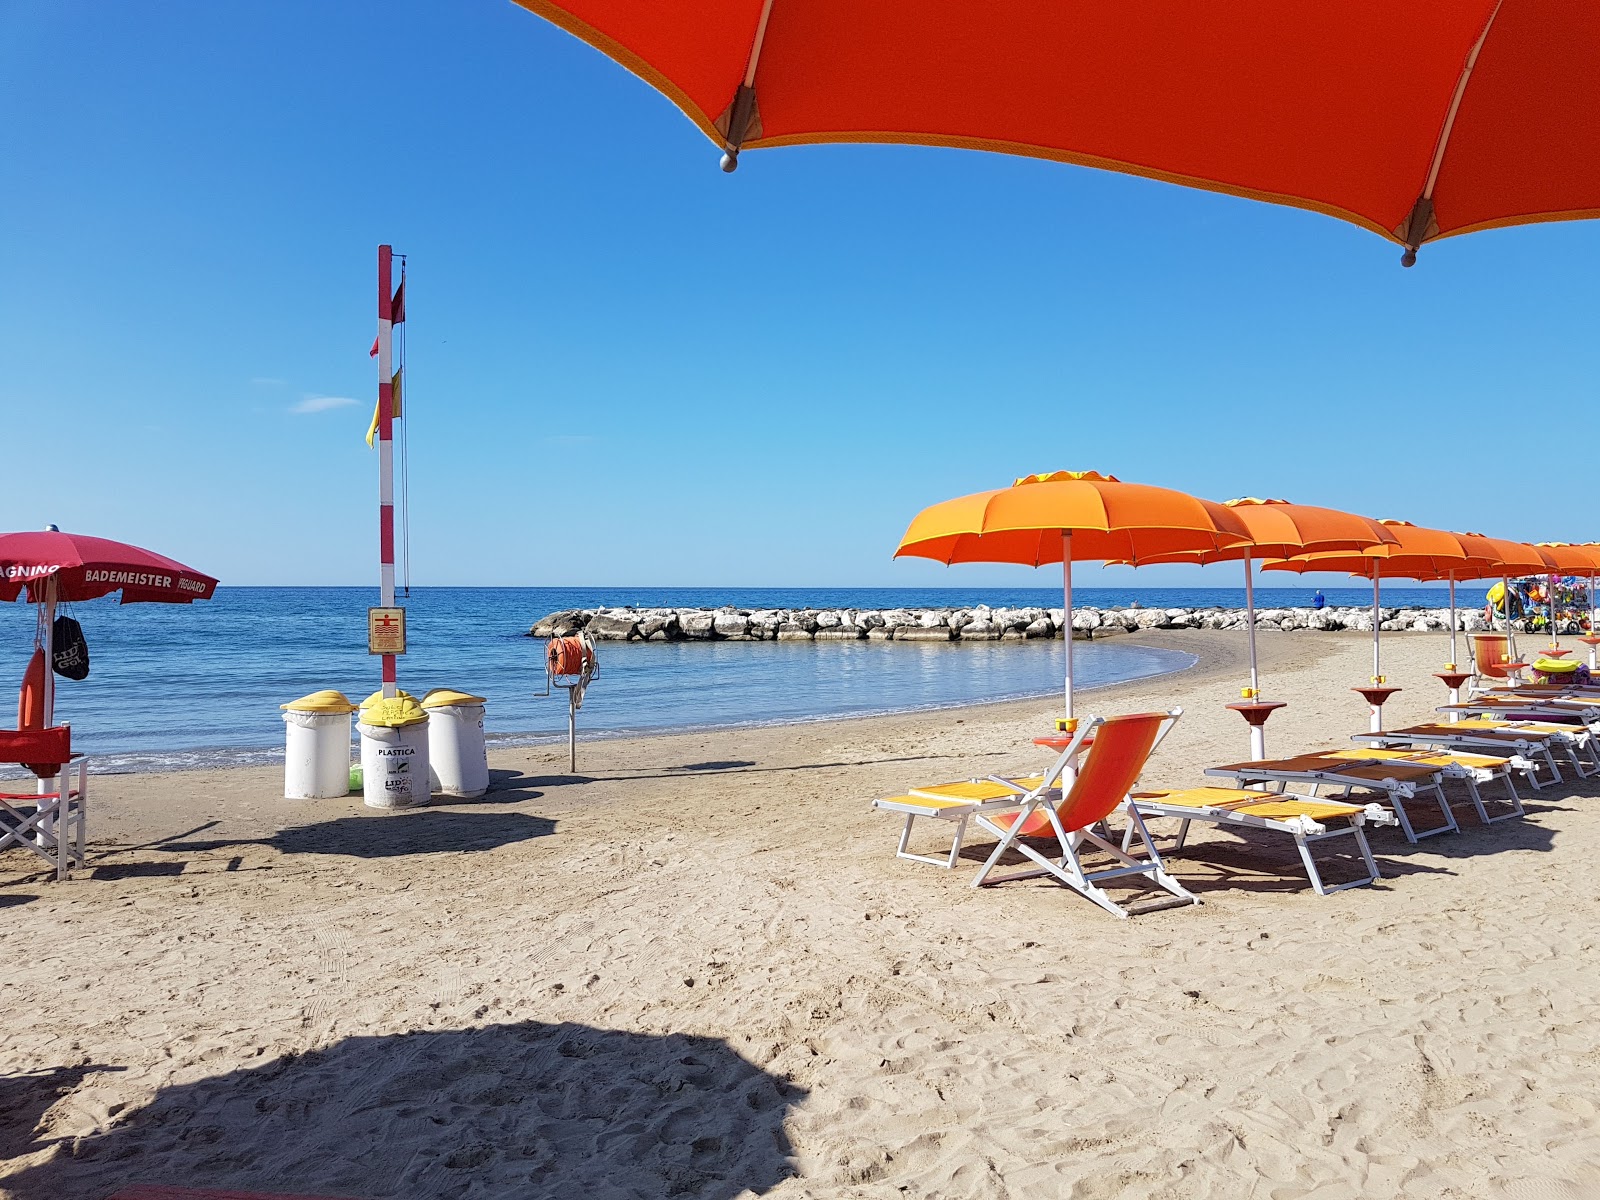 Photo de Gianola beach - endroit populaire parmi les connaisseurs de la détente